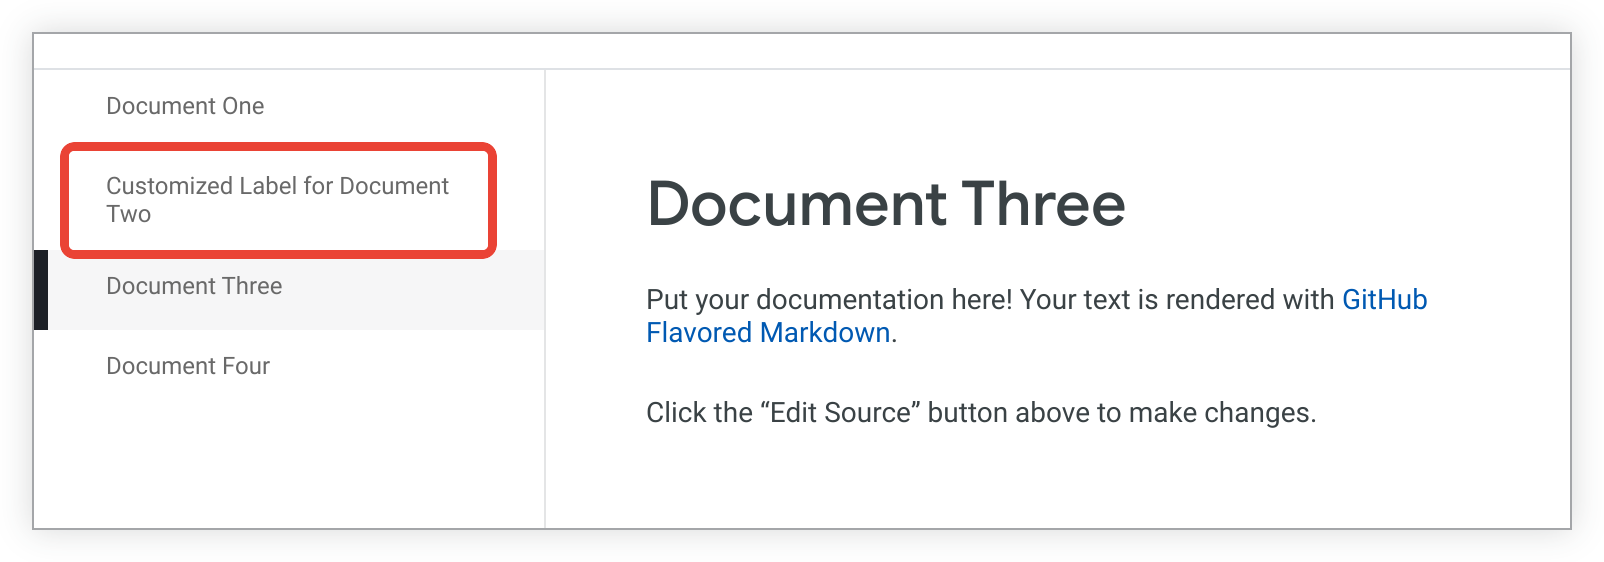 La pagina document_two è elencata come Etichetta personalizzata per il Documento Due nella barra laterale.